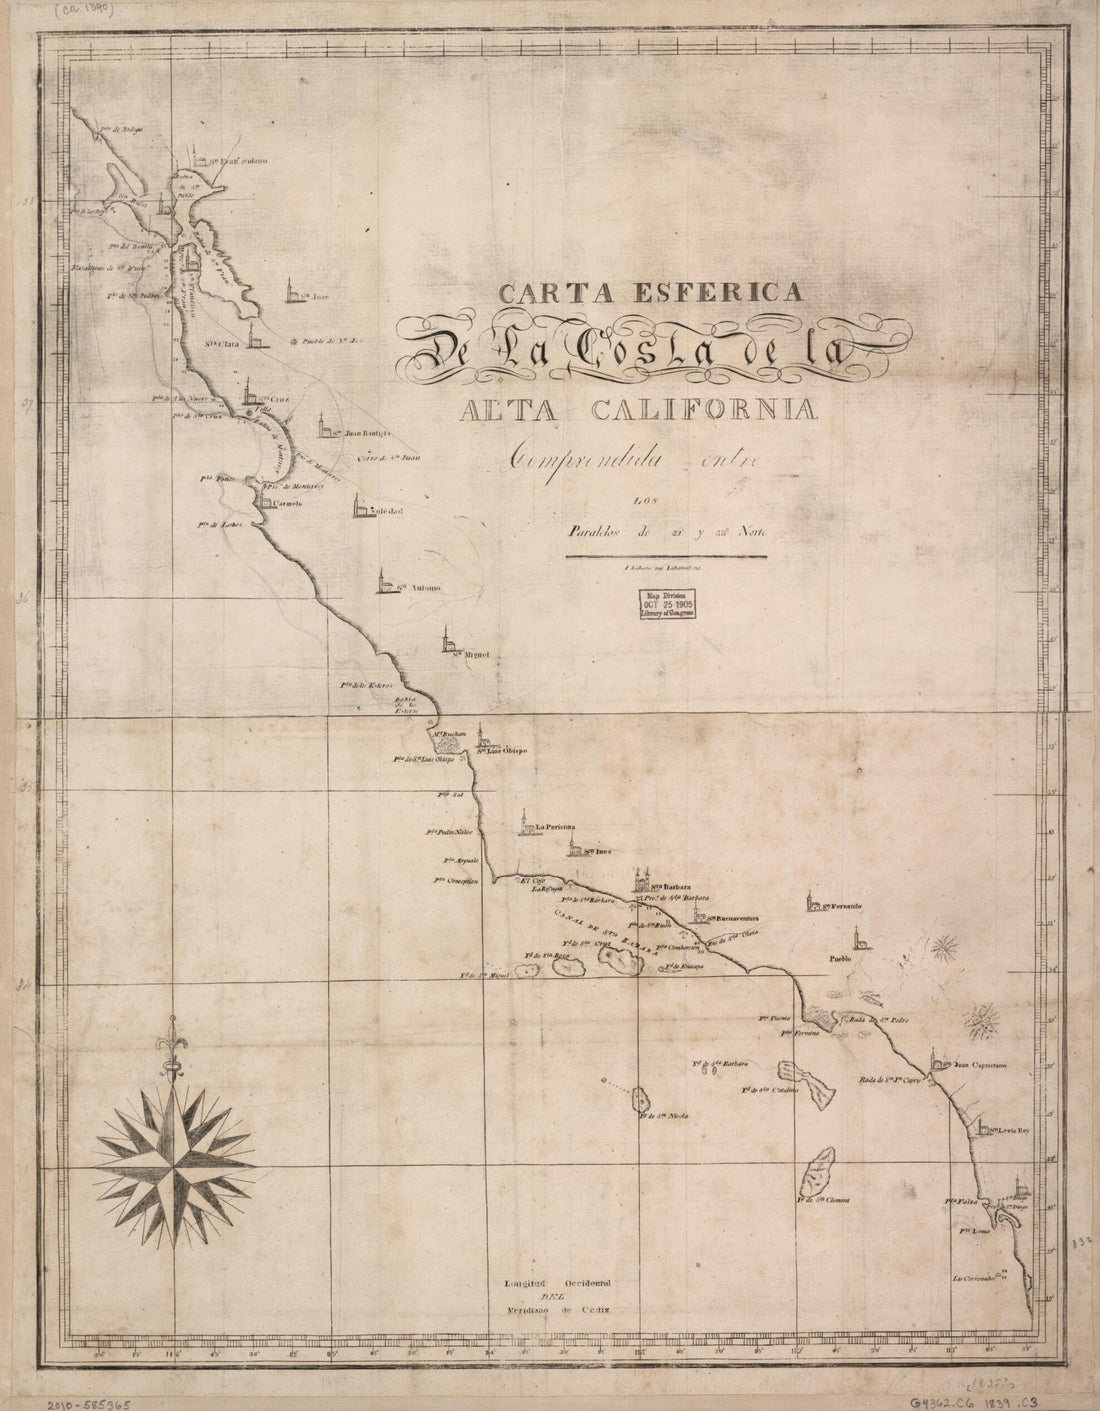 This old map of Carta Esférica De La Costa De La Alta California : Comprendida Entre Los Paralelos De 32° Y 38° Norte from 1839 was created by  in 1839